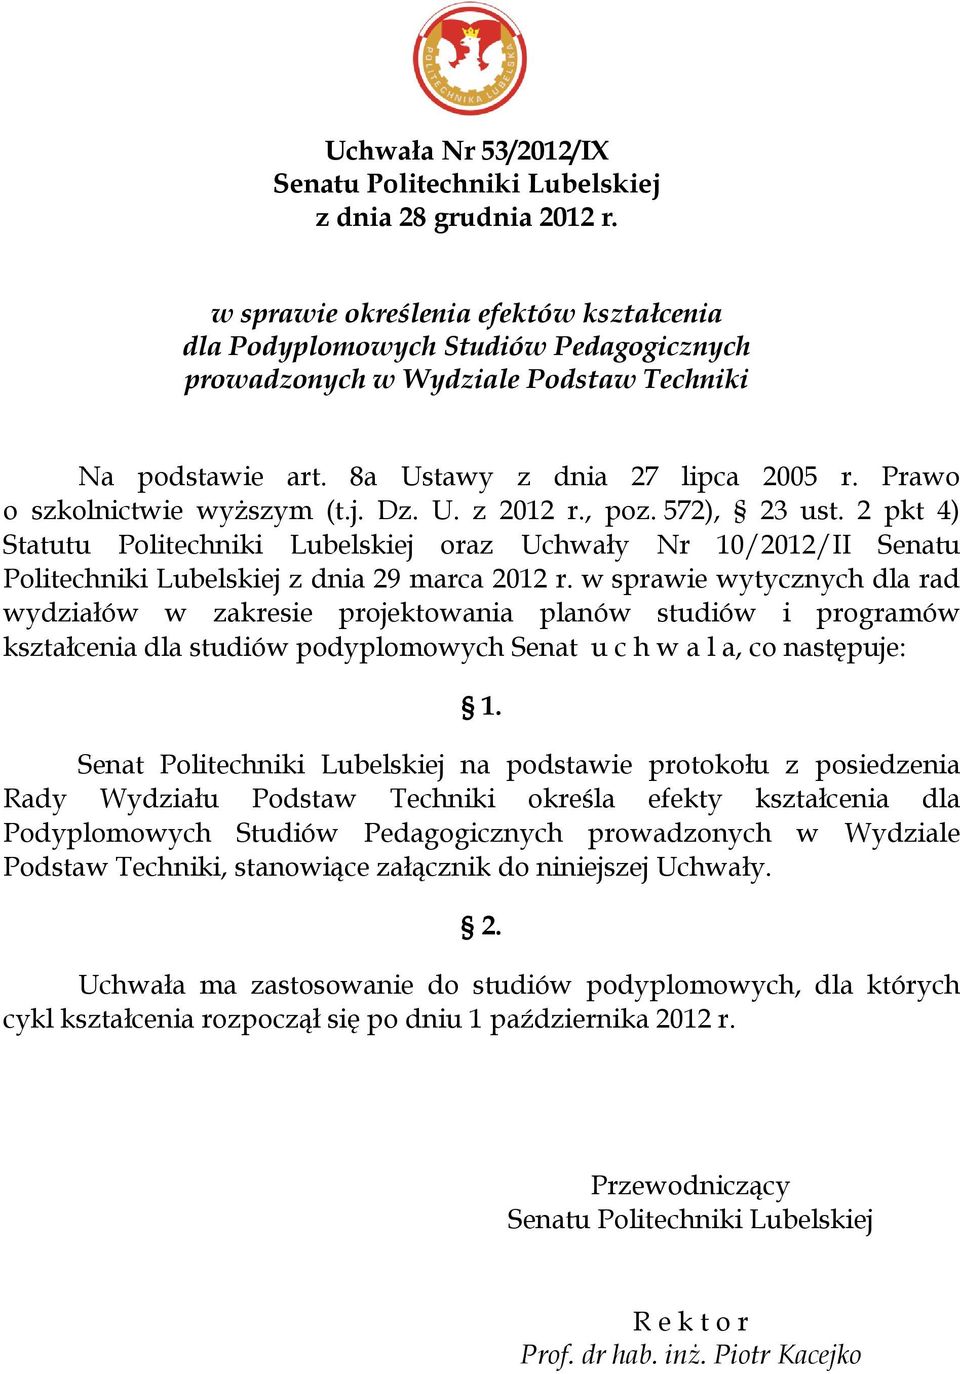 Prawo o szkolnictwie wyższym (t.j. Dz. U. z 2012 r., poz. 572), 23 ust. 2 pkt 4) Statutu Politechniki Lubelskiej oraz Uchwały Nr 10/2012/II Senatu Politechniki Lubelskiej z dnia 29 marca 2012 r.